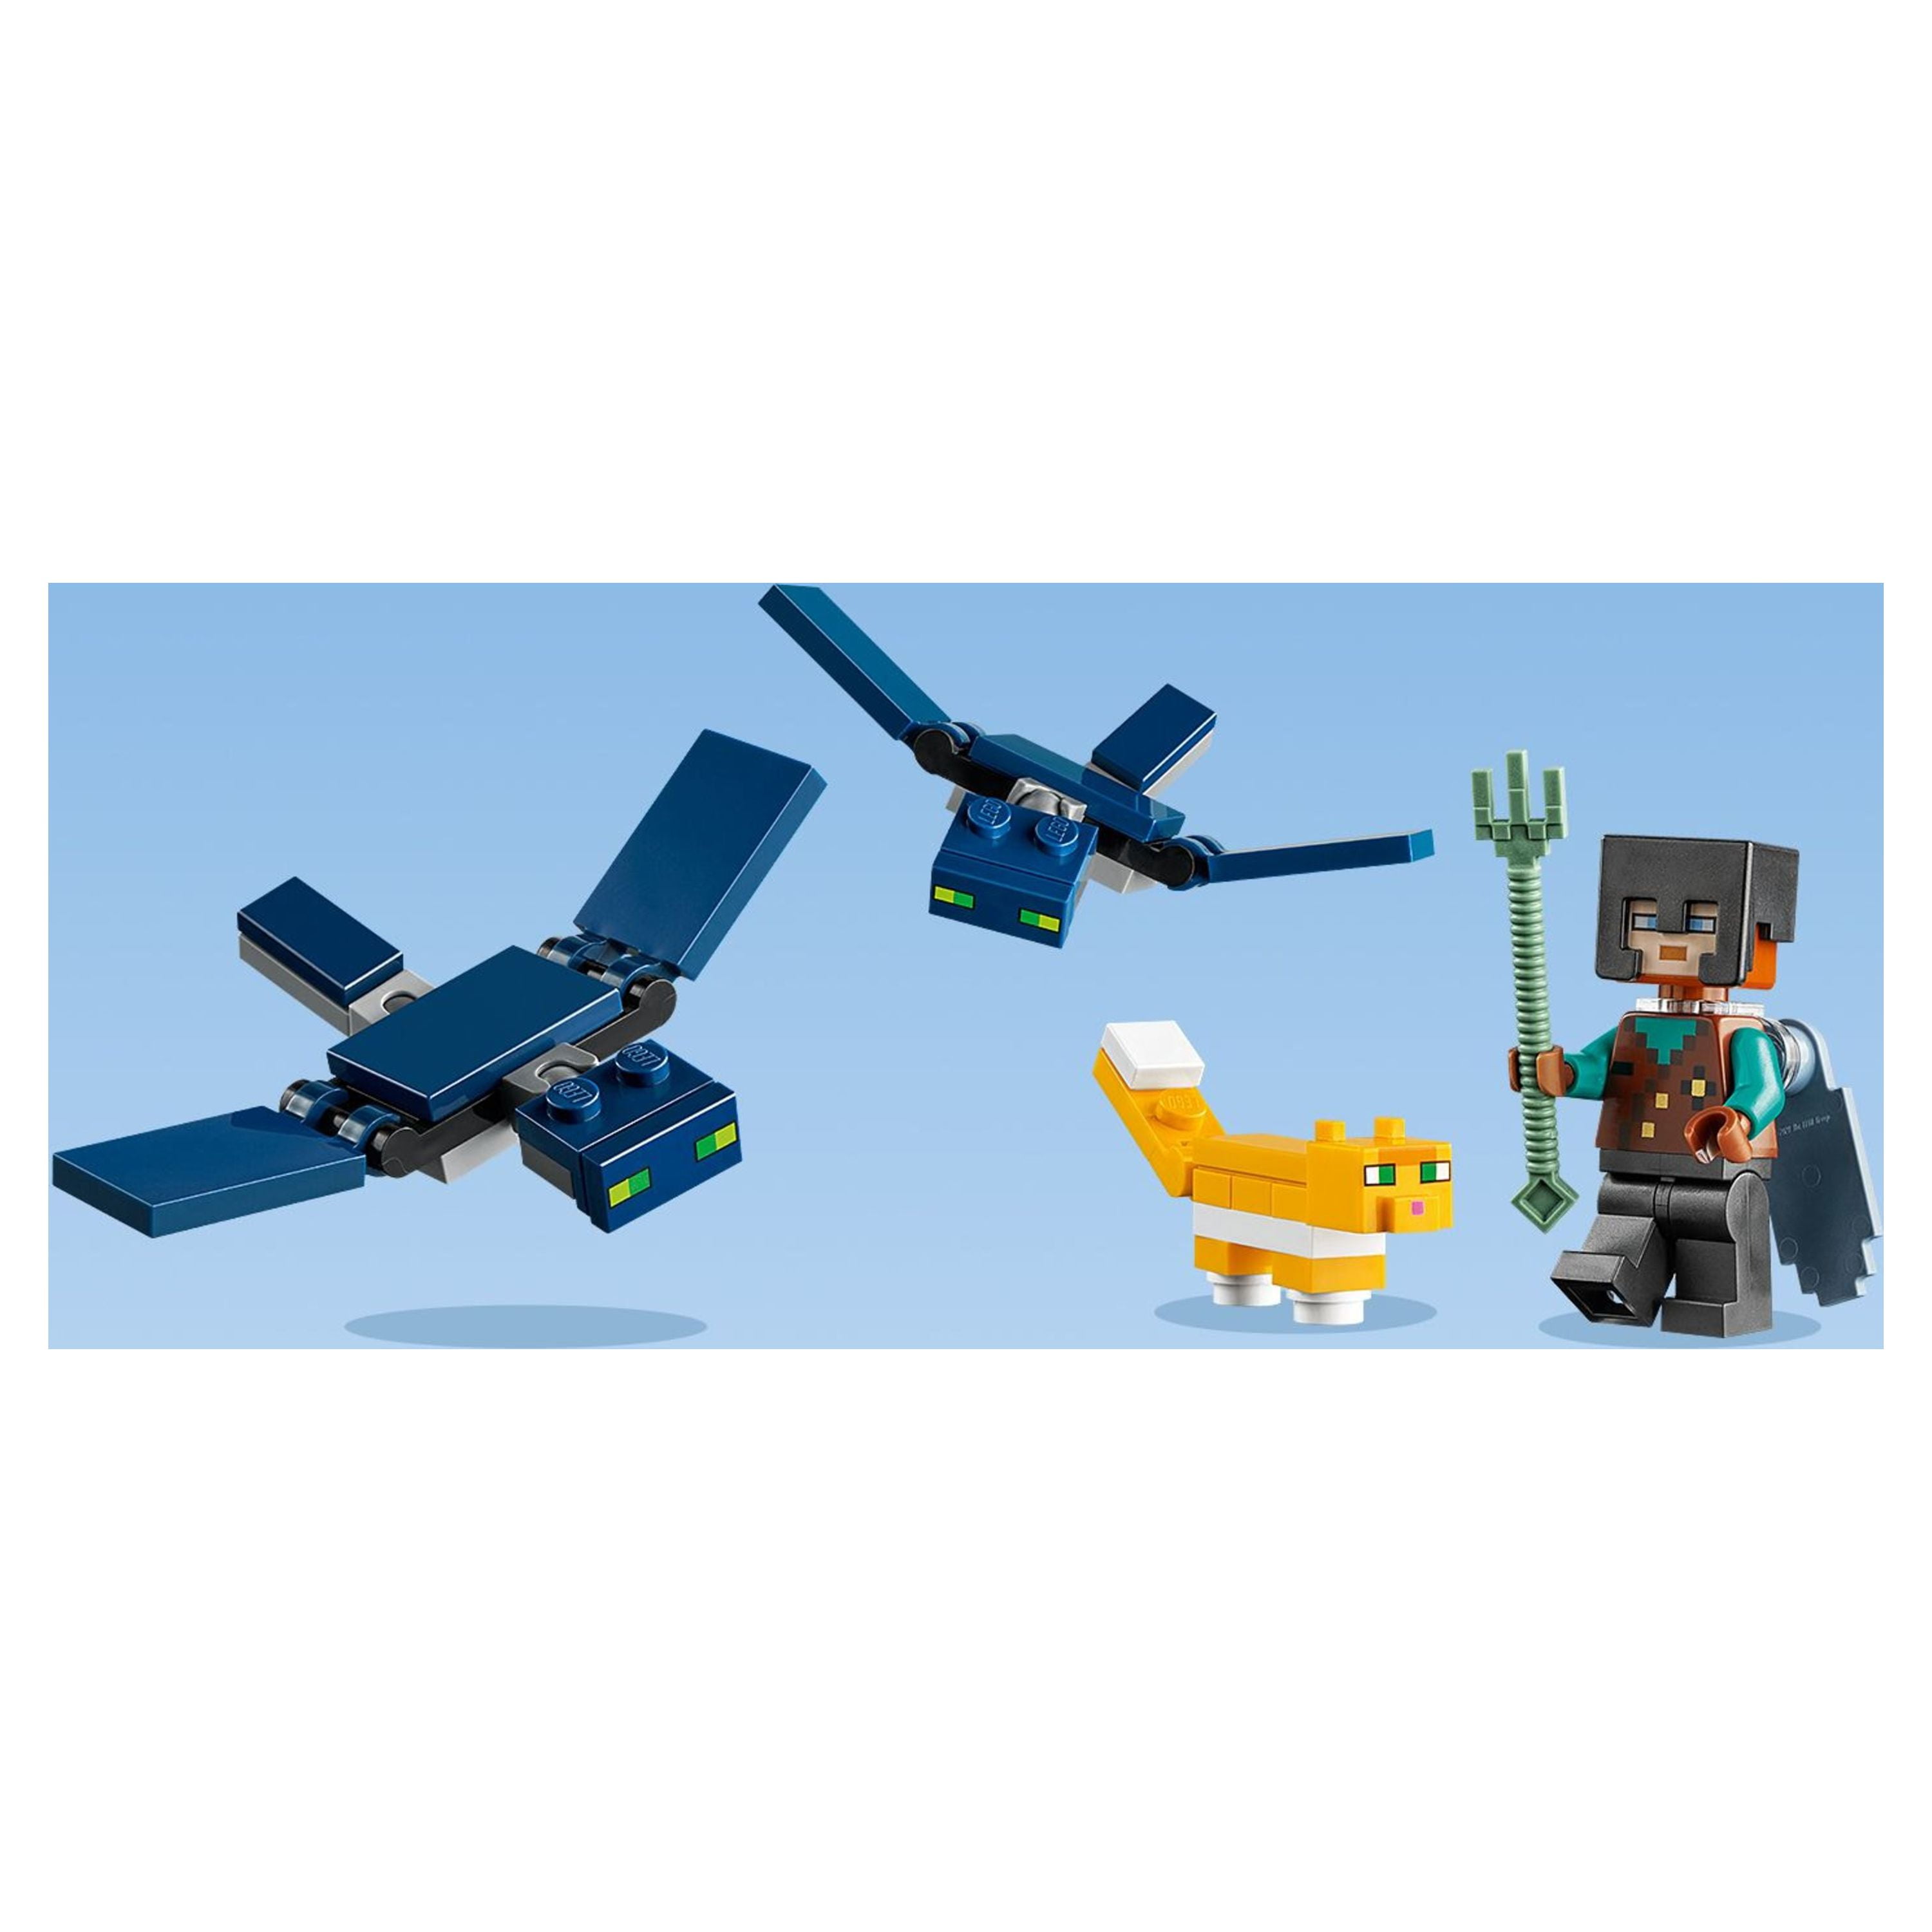 LEGO IDEAS - Minecraft Story Mode Showdown in the Sky